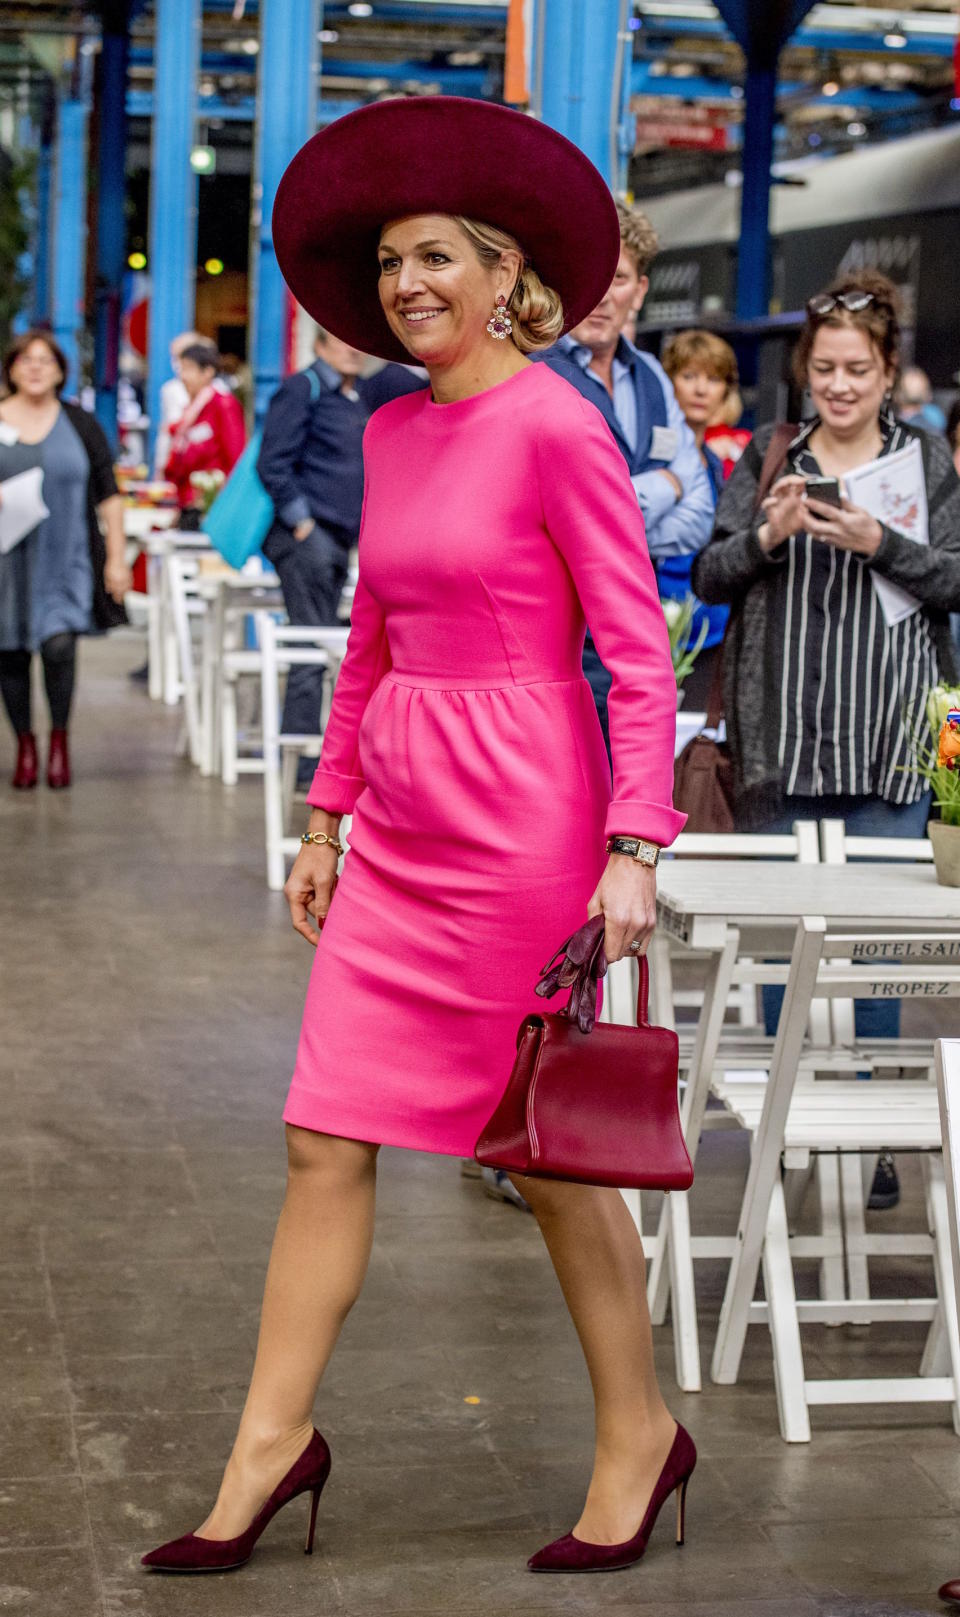 <p>Farbe trifft Farbe: Königin Máxima wagt sich gerne an auffällige Outfits. Auf einer Veranstaltung im niederländischen Amersfoort leuchtete die 46-Jährge in einem knallpinken Kleid. Dazu wählte sie Accessoires im Trendton Beere. (Bild: Rex Features) </p>